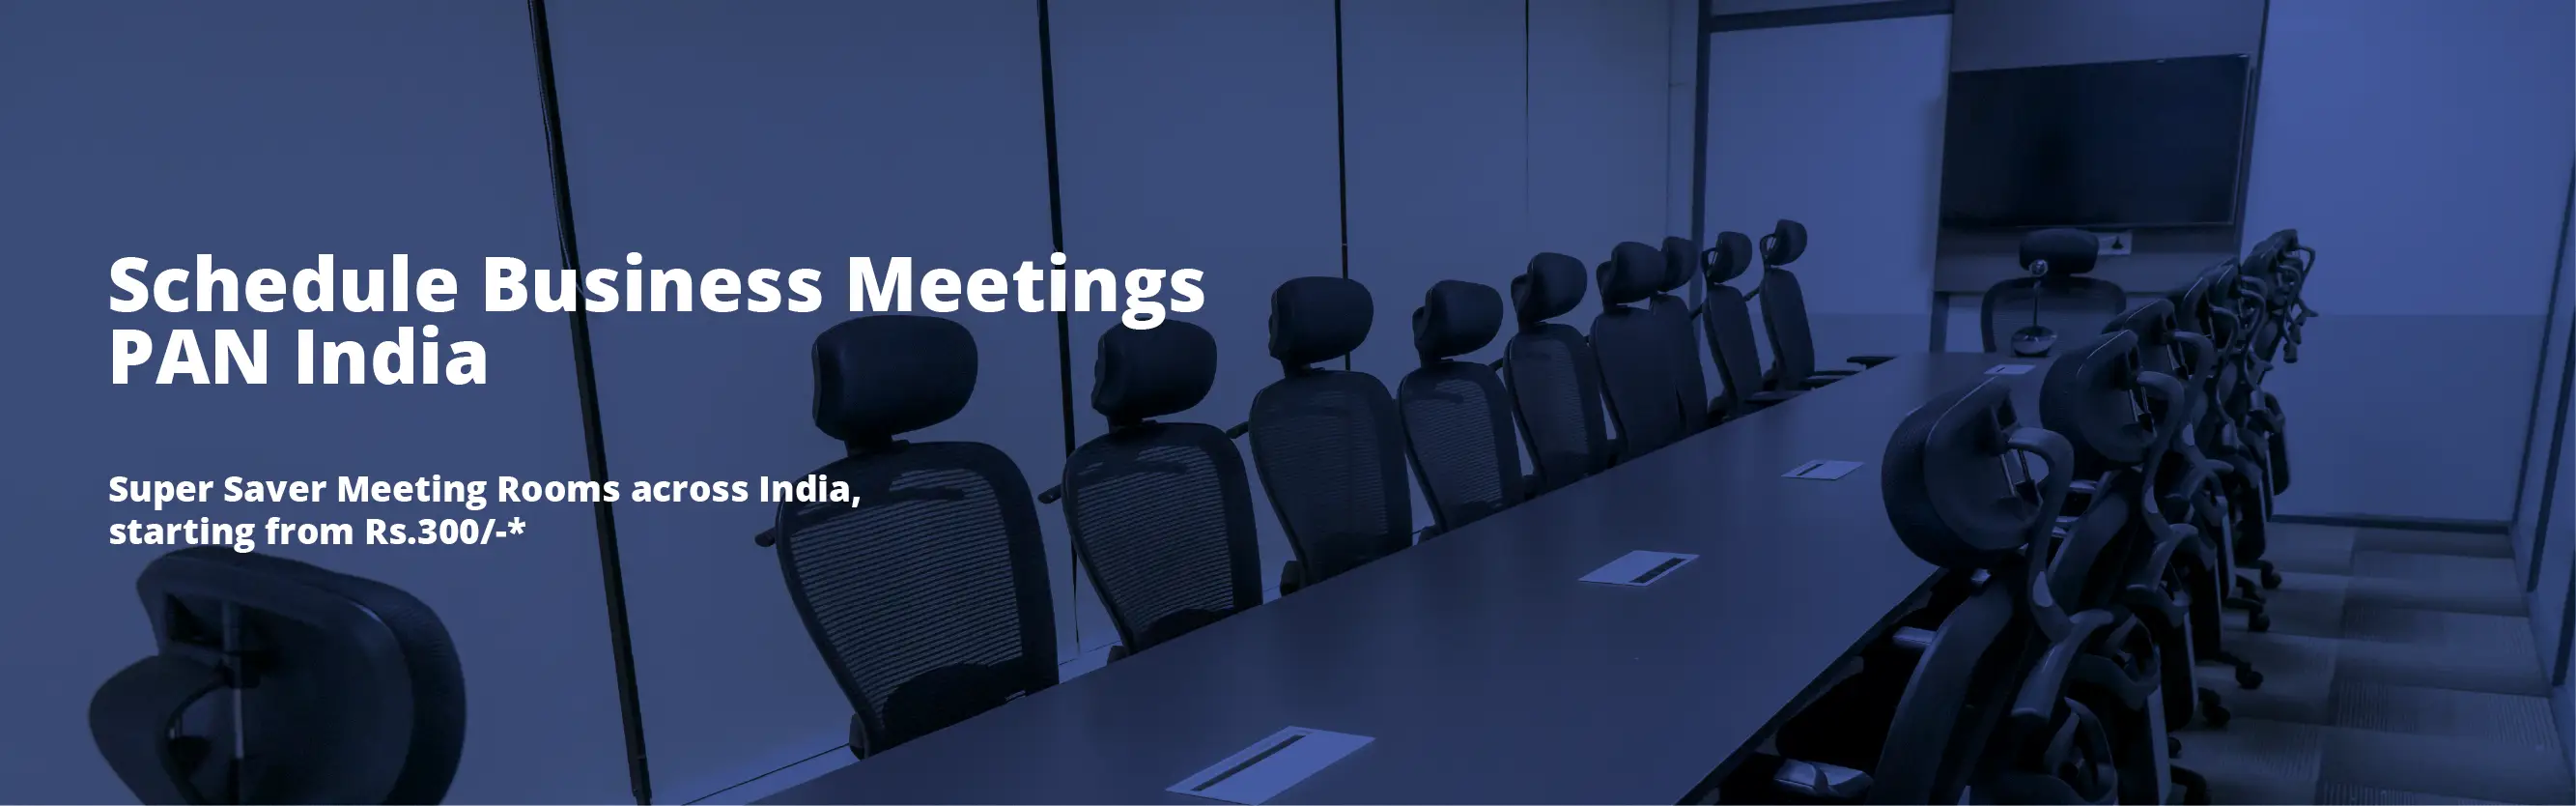 Schedule Business meetings PAN India